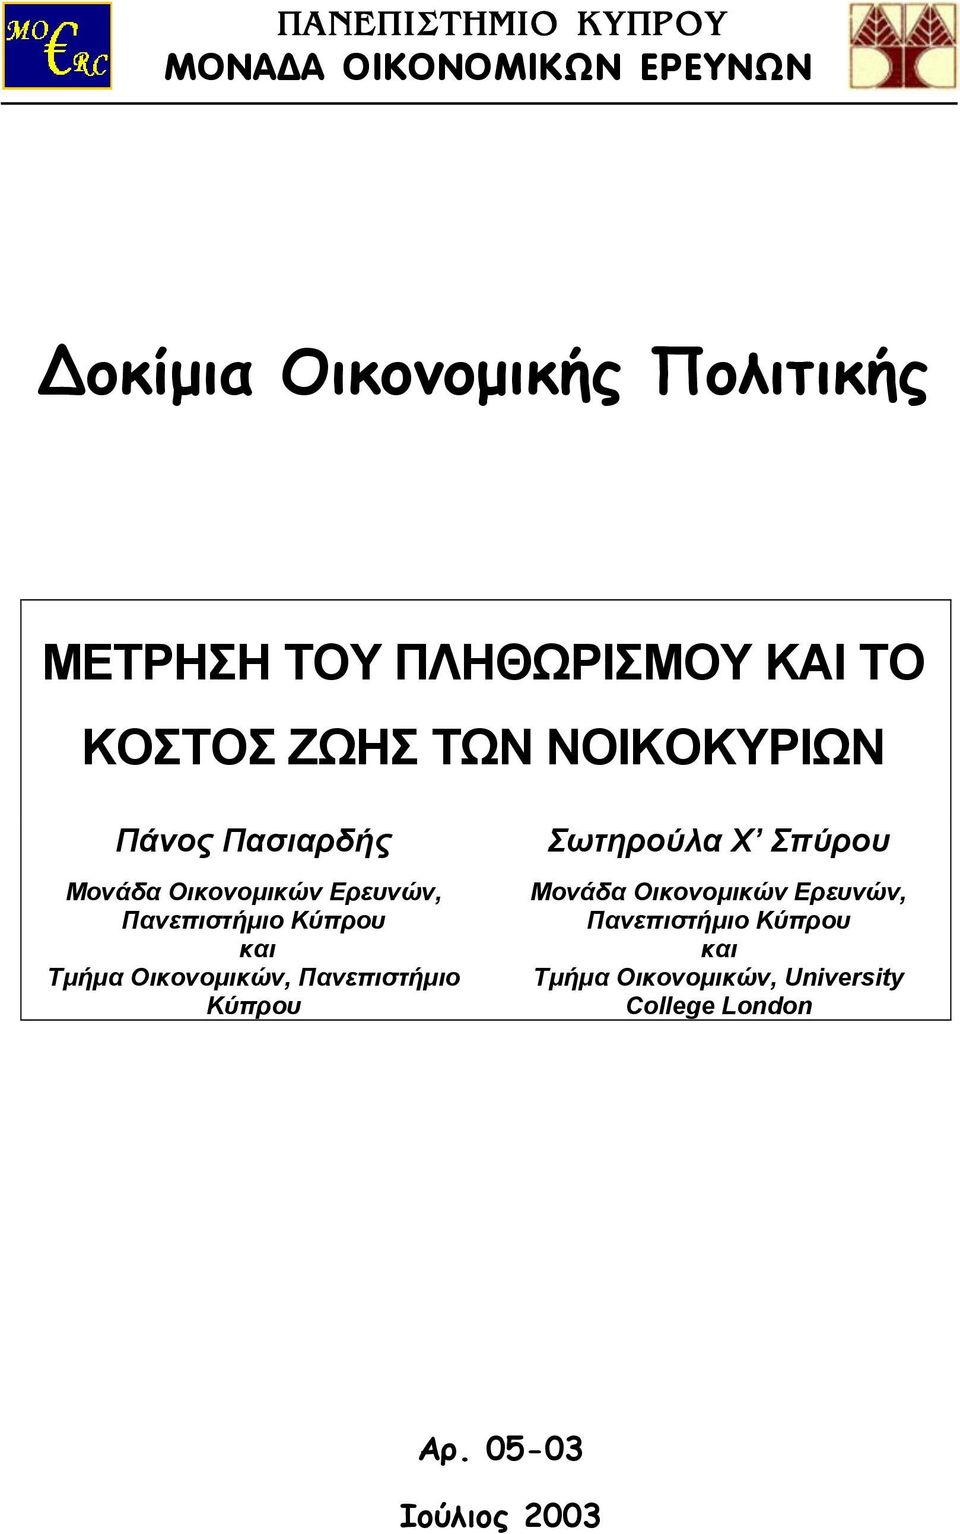 Πανεπιστήµιο Κύπρου και Τµήµα Οικονοµικών, Πανεπιστήµιο Κύπρου Σωτηρούλα Χ Σπύρου Μονάδα